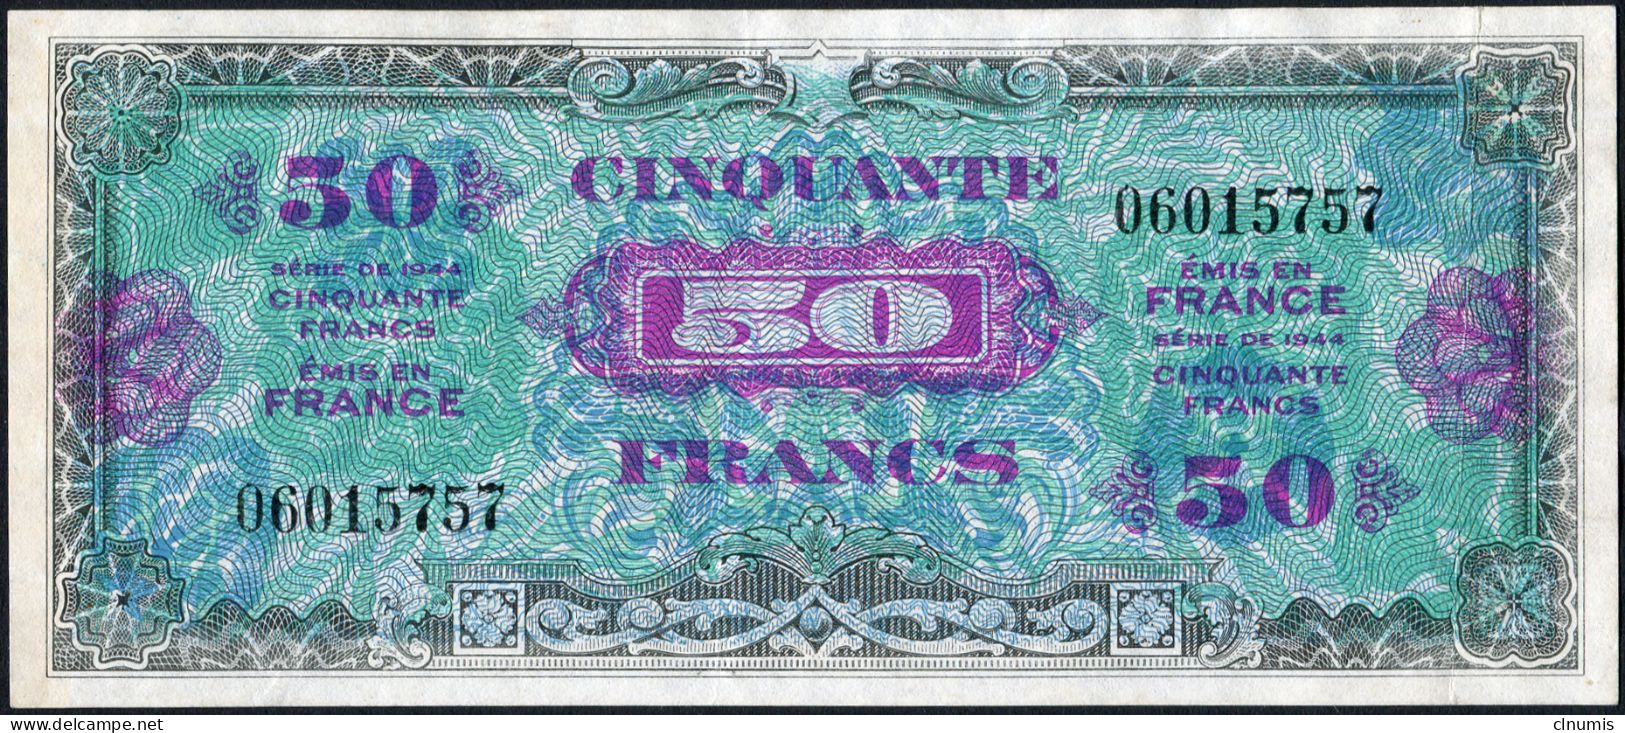 RARE 50 Francs Drapeau 1944, Sans Série, N° 060115757 - 1944 Drapeau/France